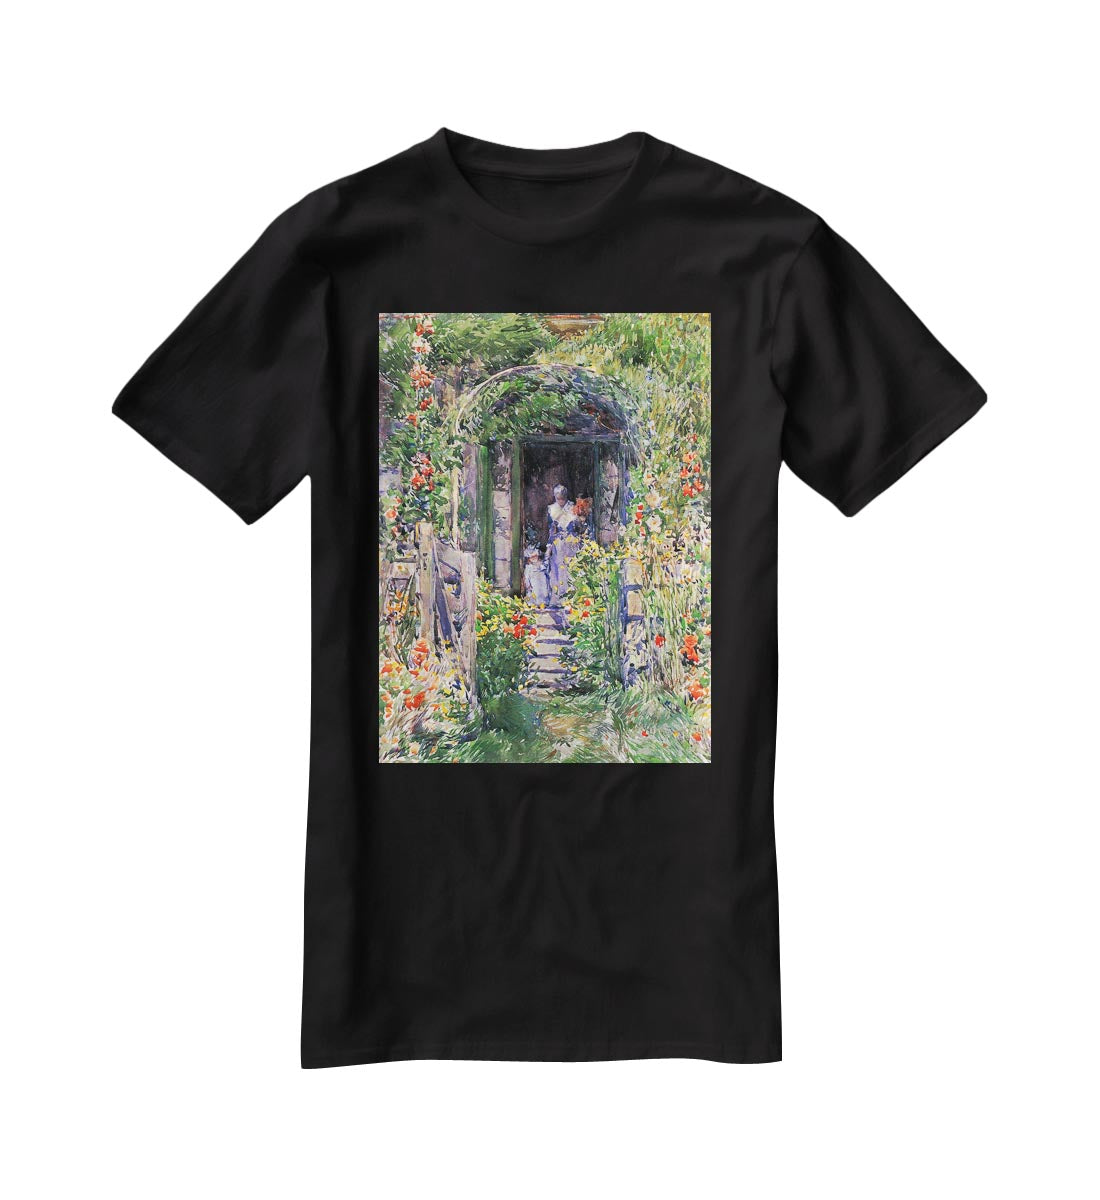 Isles of Shoals Garden by Hassam T-Shirt - Canvas Art Rocks - 1